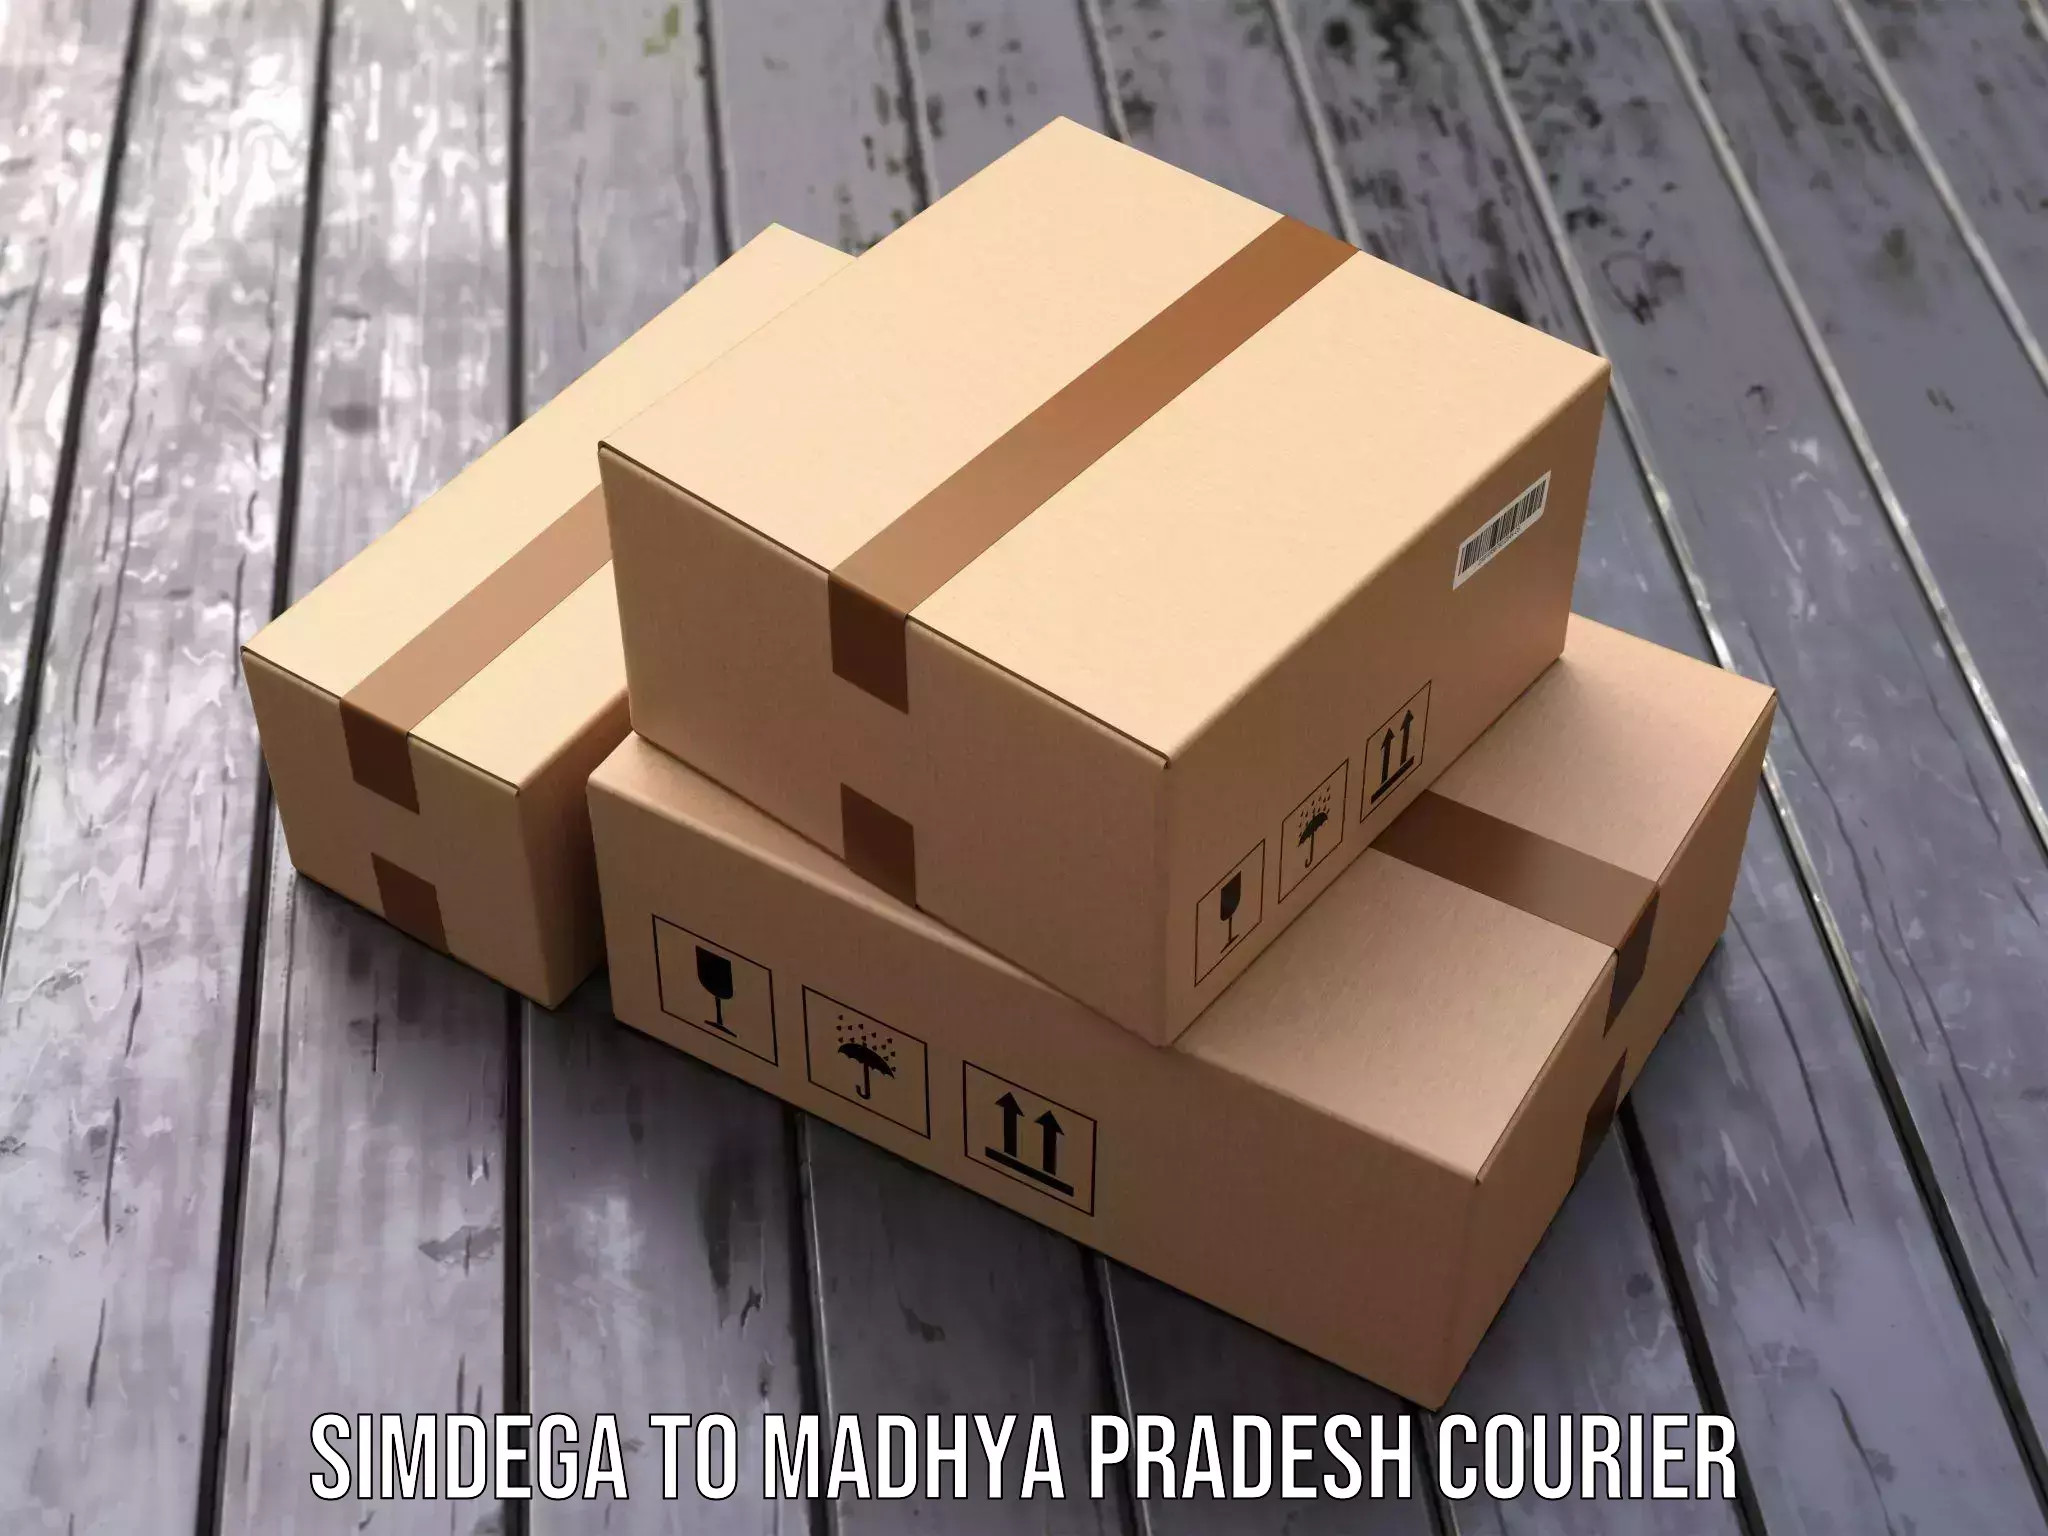 Parcel delivery Simdega to Jatara